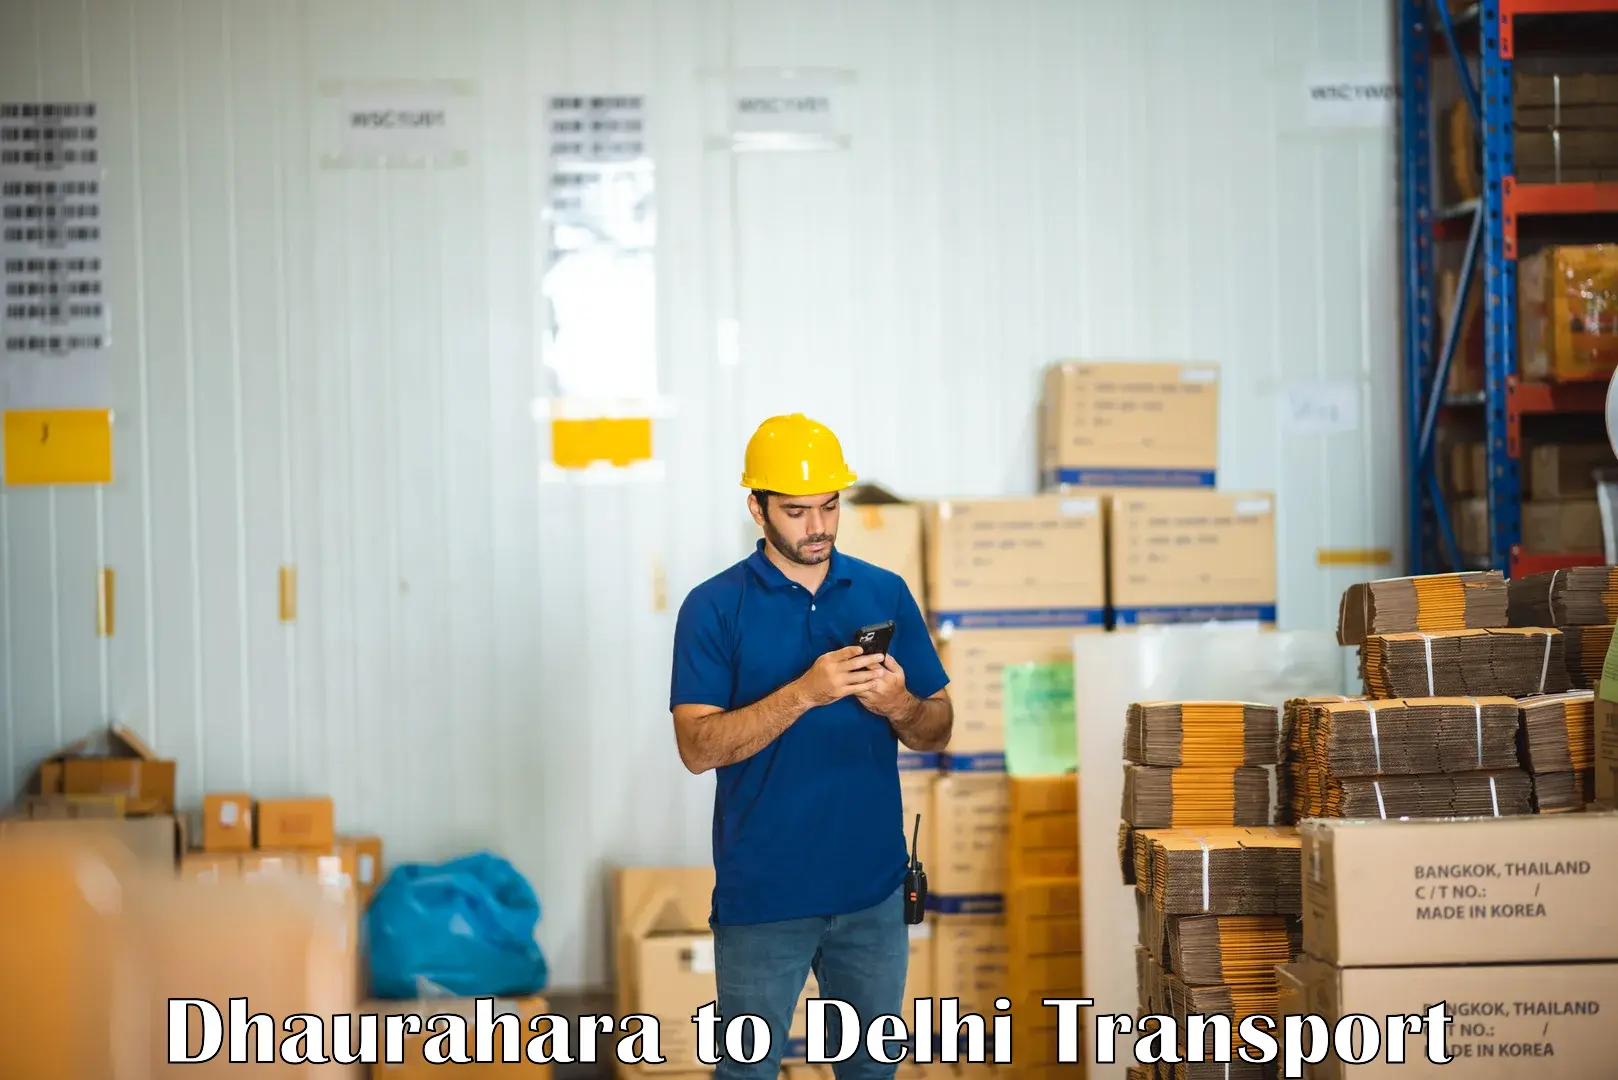 Lorry transport service Dhaurahara to Subhash Nagar